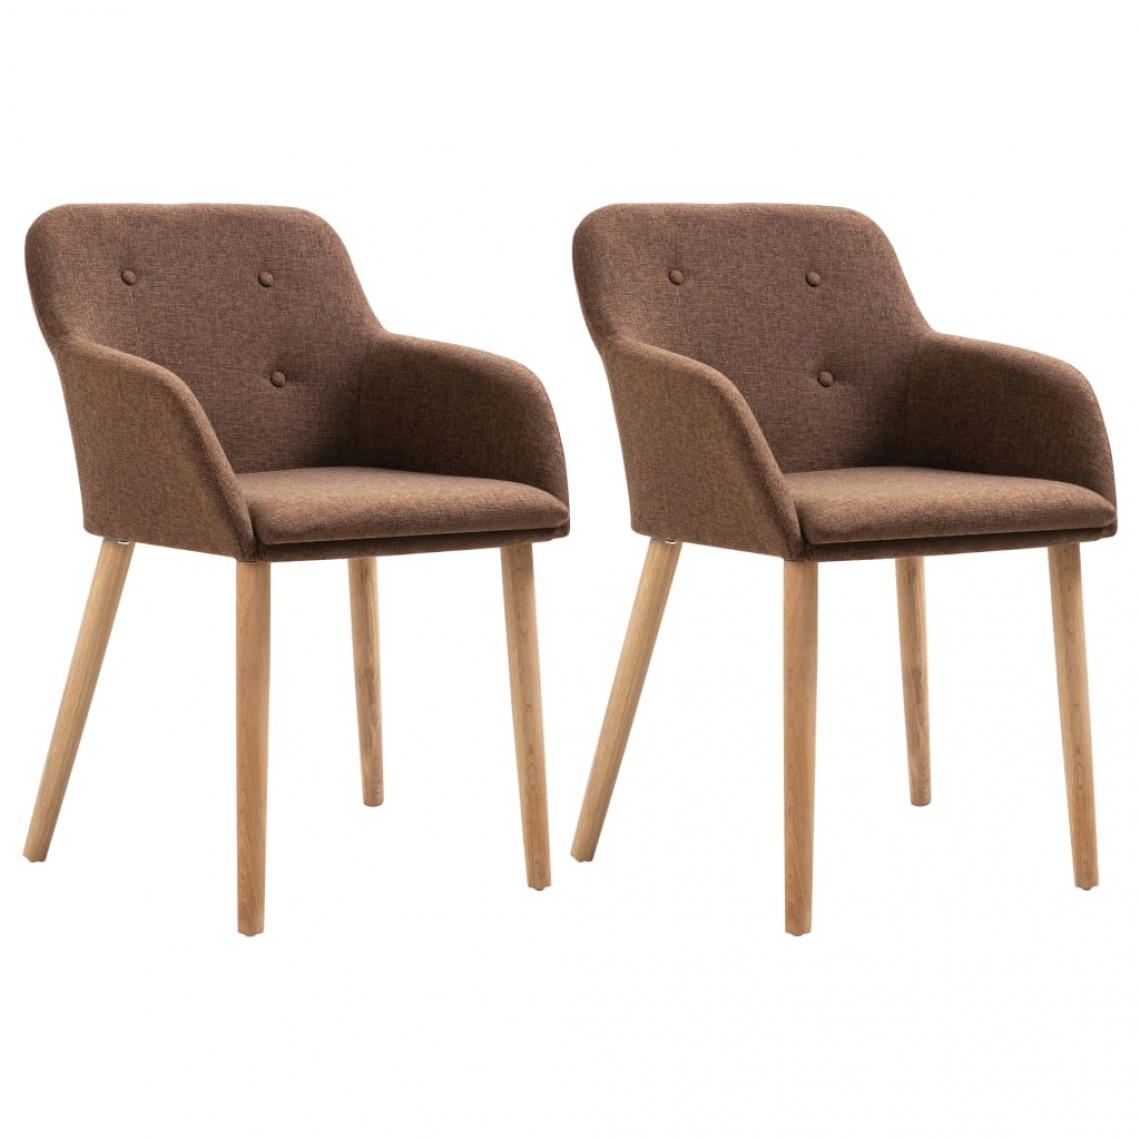 Decoshop26 - Lot de 2 chaises de salle à manger cuisine design moderne tissu marron et chêne massif CDS020781 - Chaises